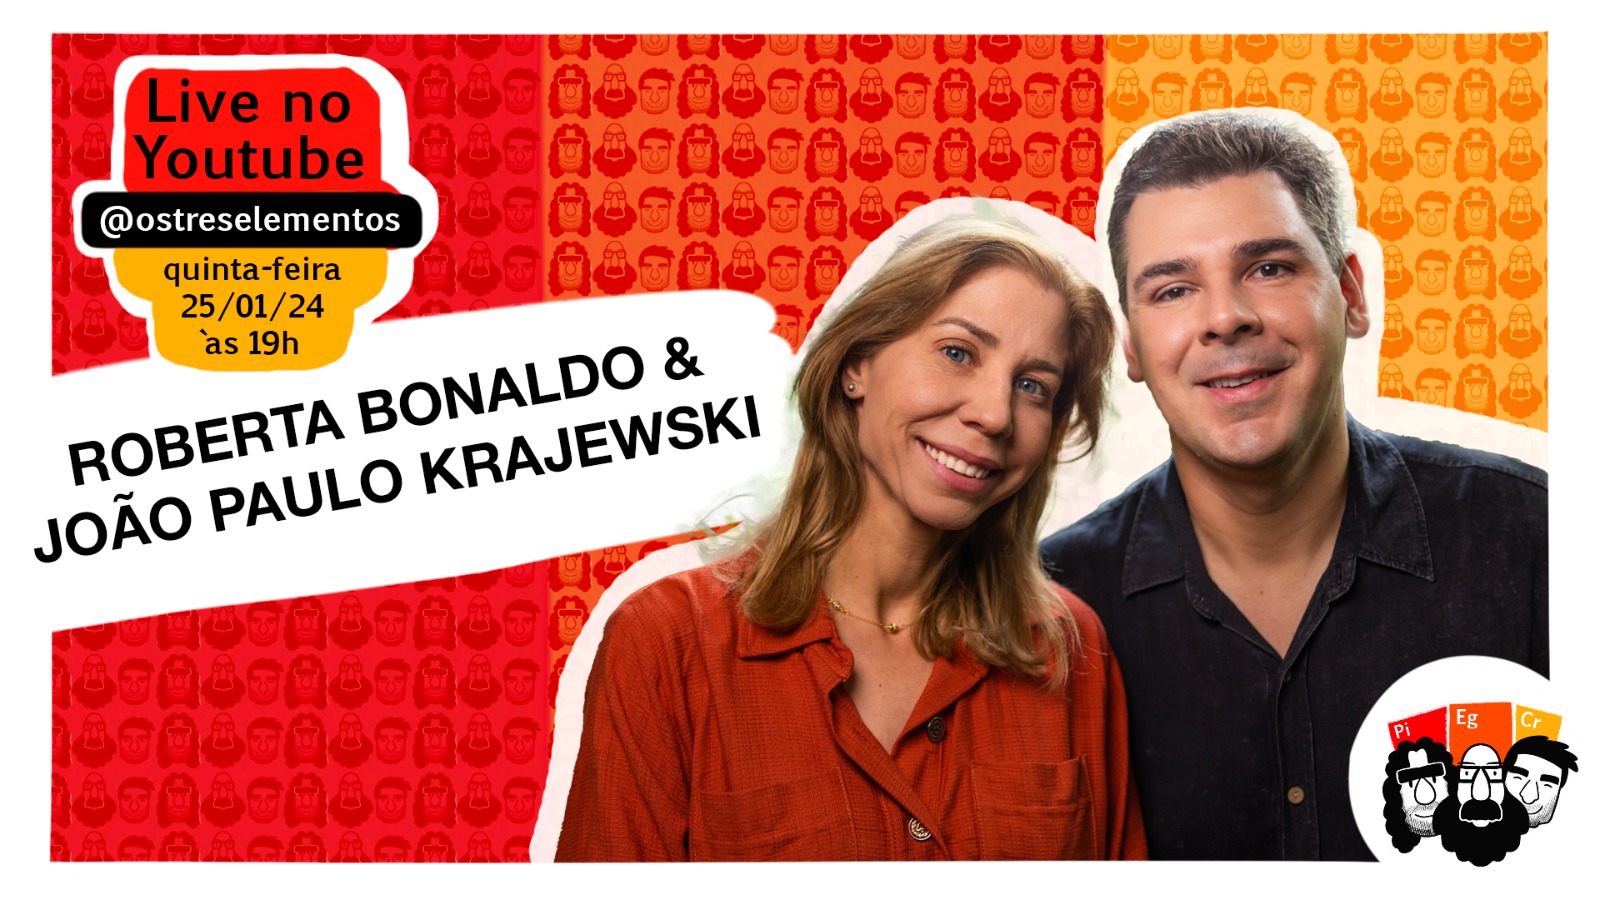 João Paulo Krajewski e Roberta Bonaldo participam do Os Três Elementos Podcast